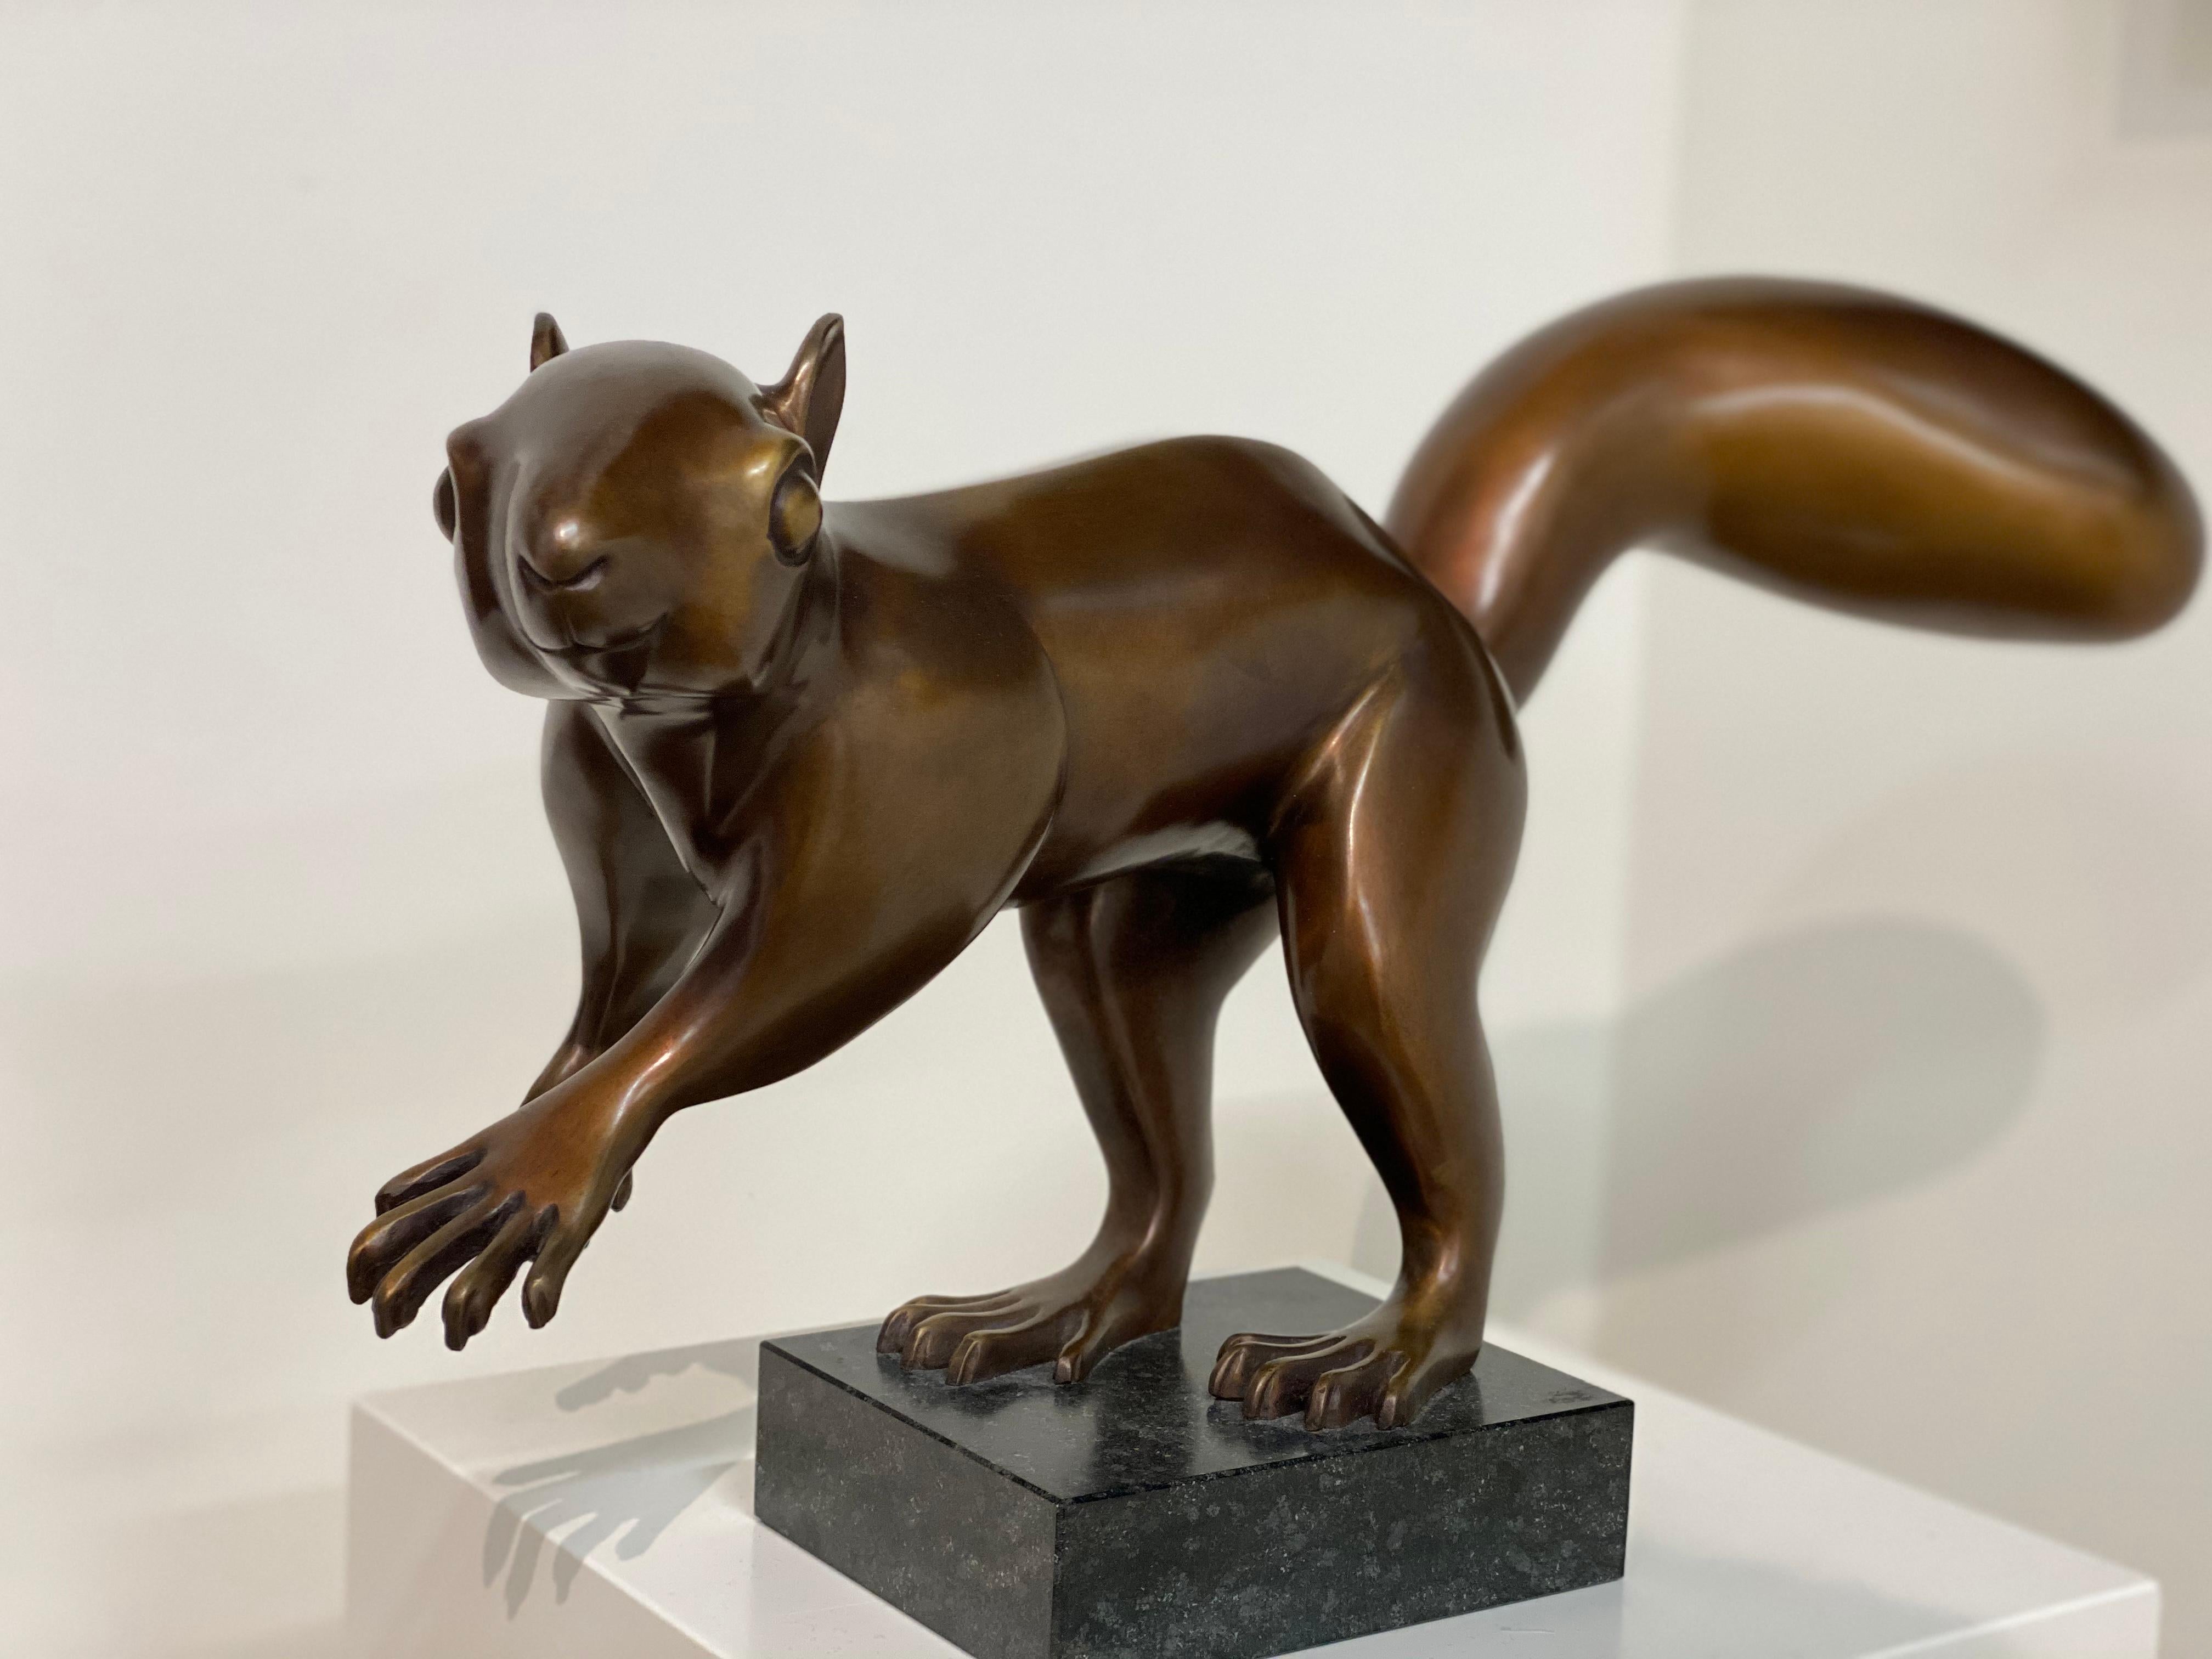 Eichhörnchen- niederländische Bronzeskulptur eines Eichhörnchens aus dem 21. Jahrhundert – Sculpture von Frans van Straaten